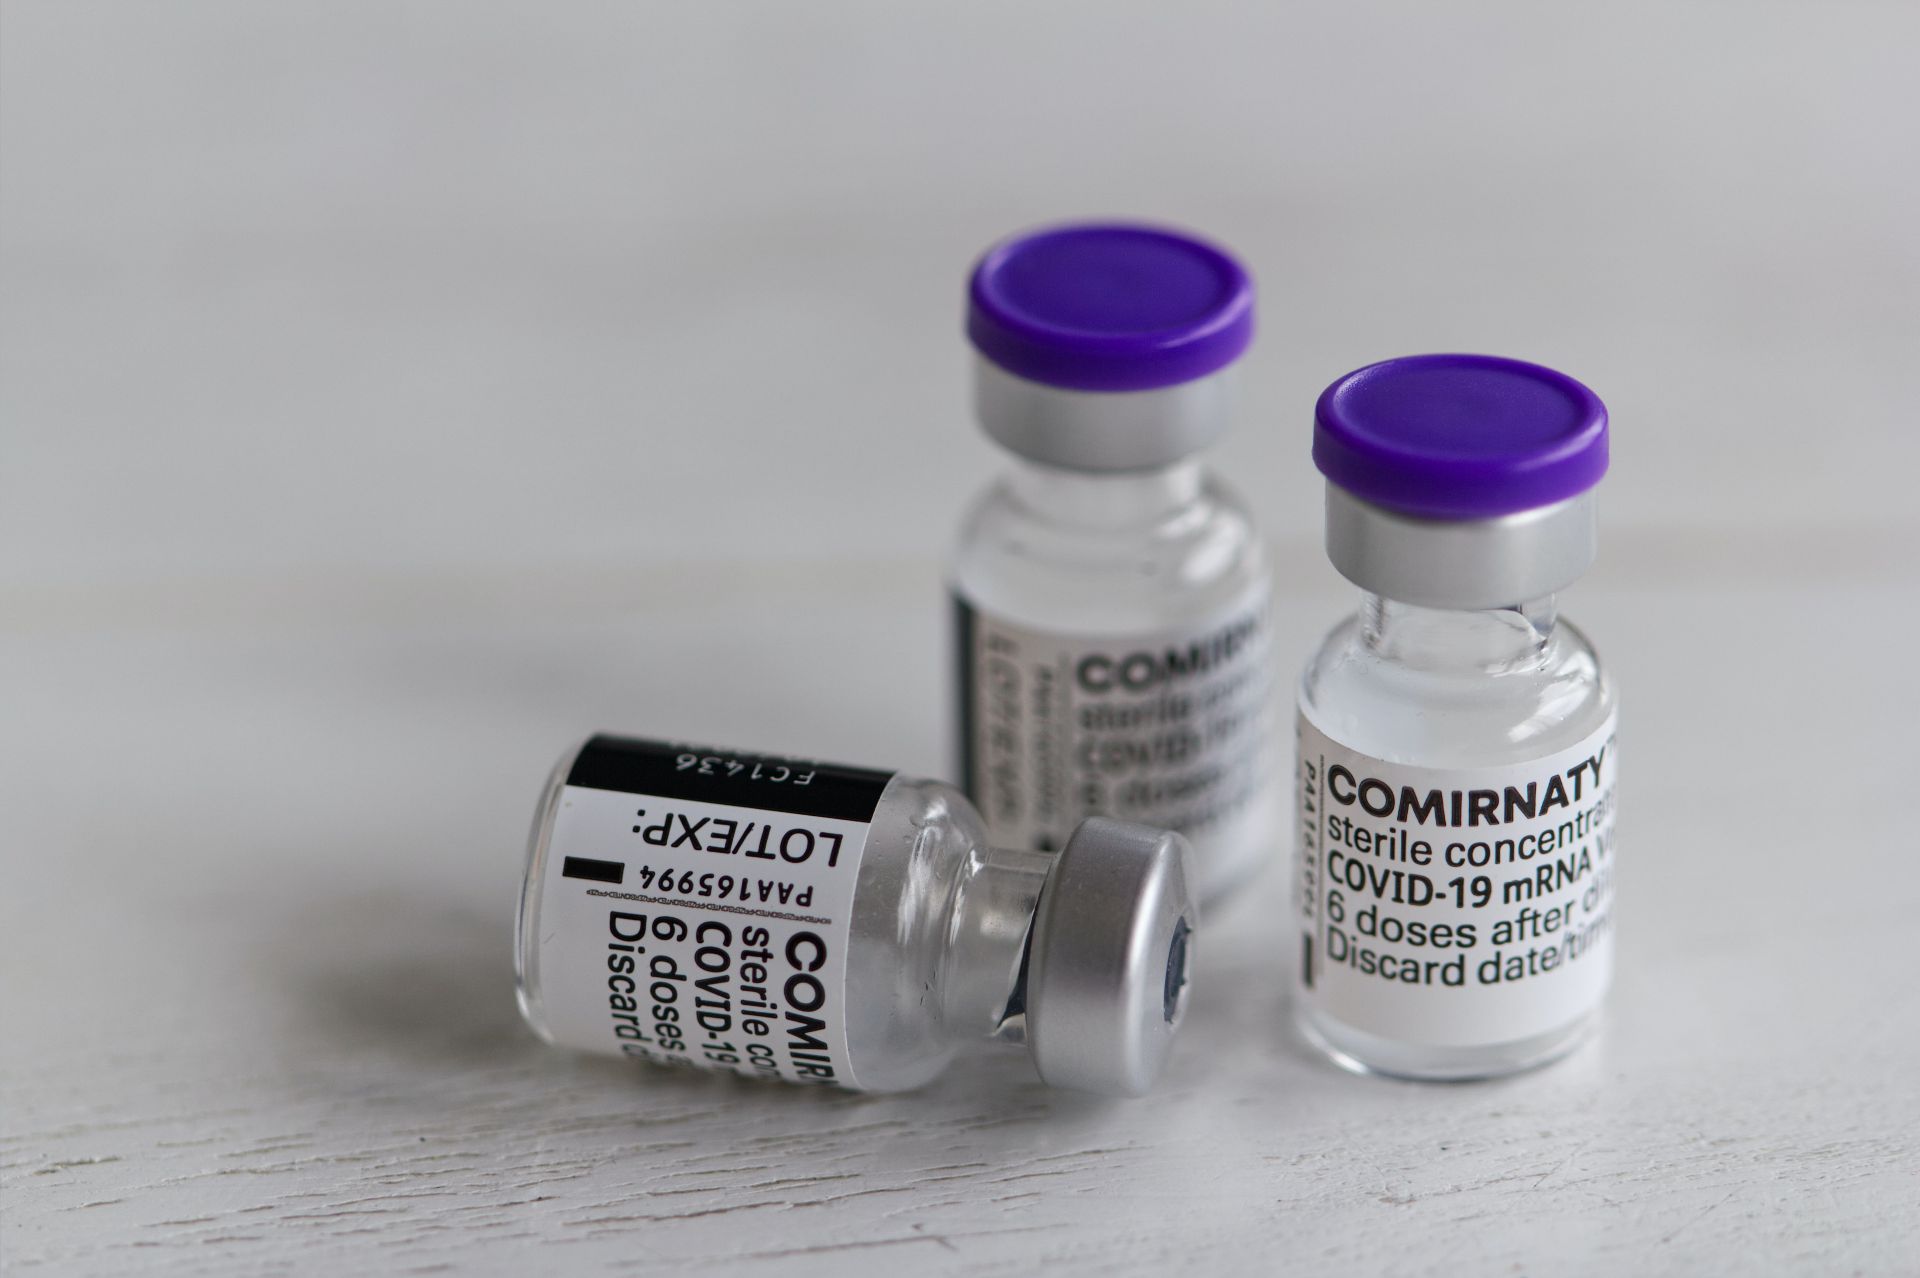 A treia doză de vaccin Pfizer are efecte secundare similare cu cele de după a doua